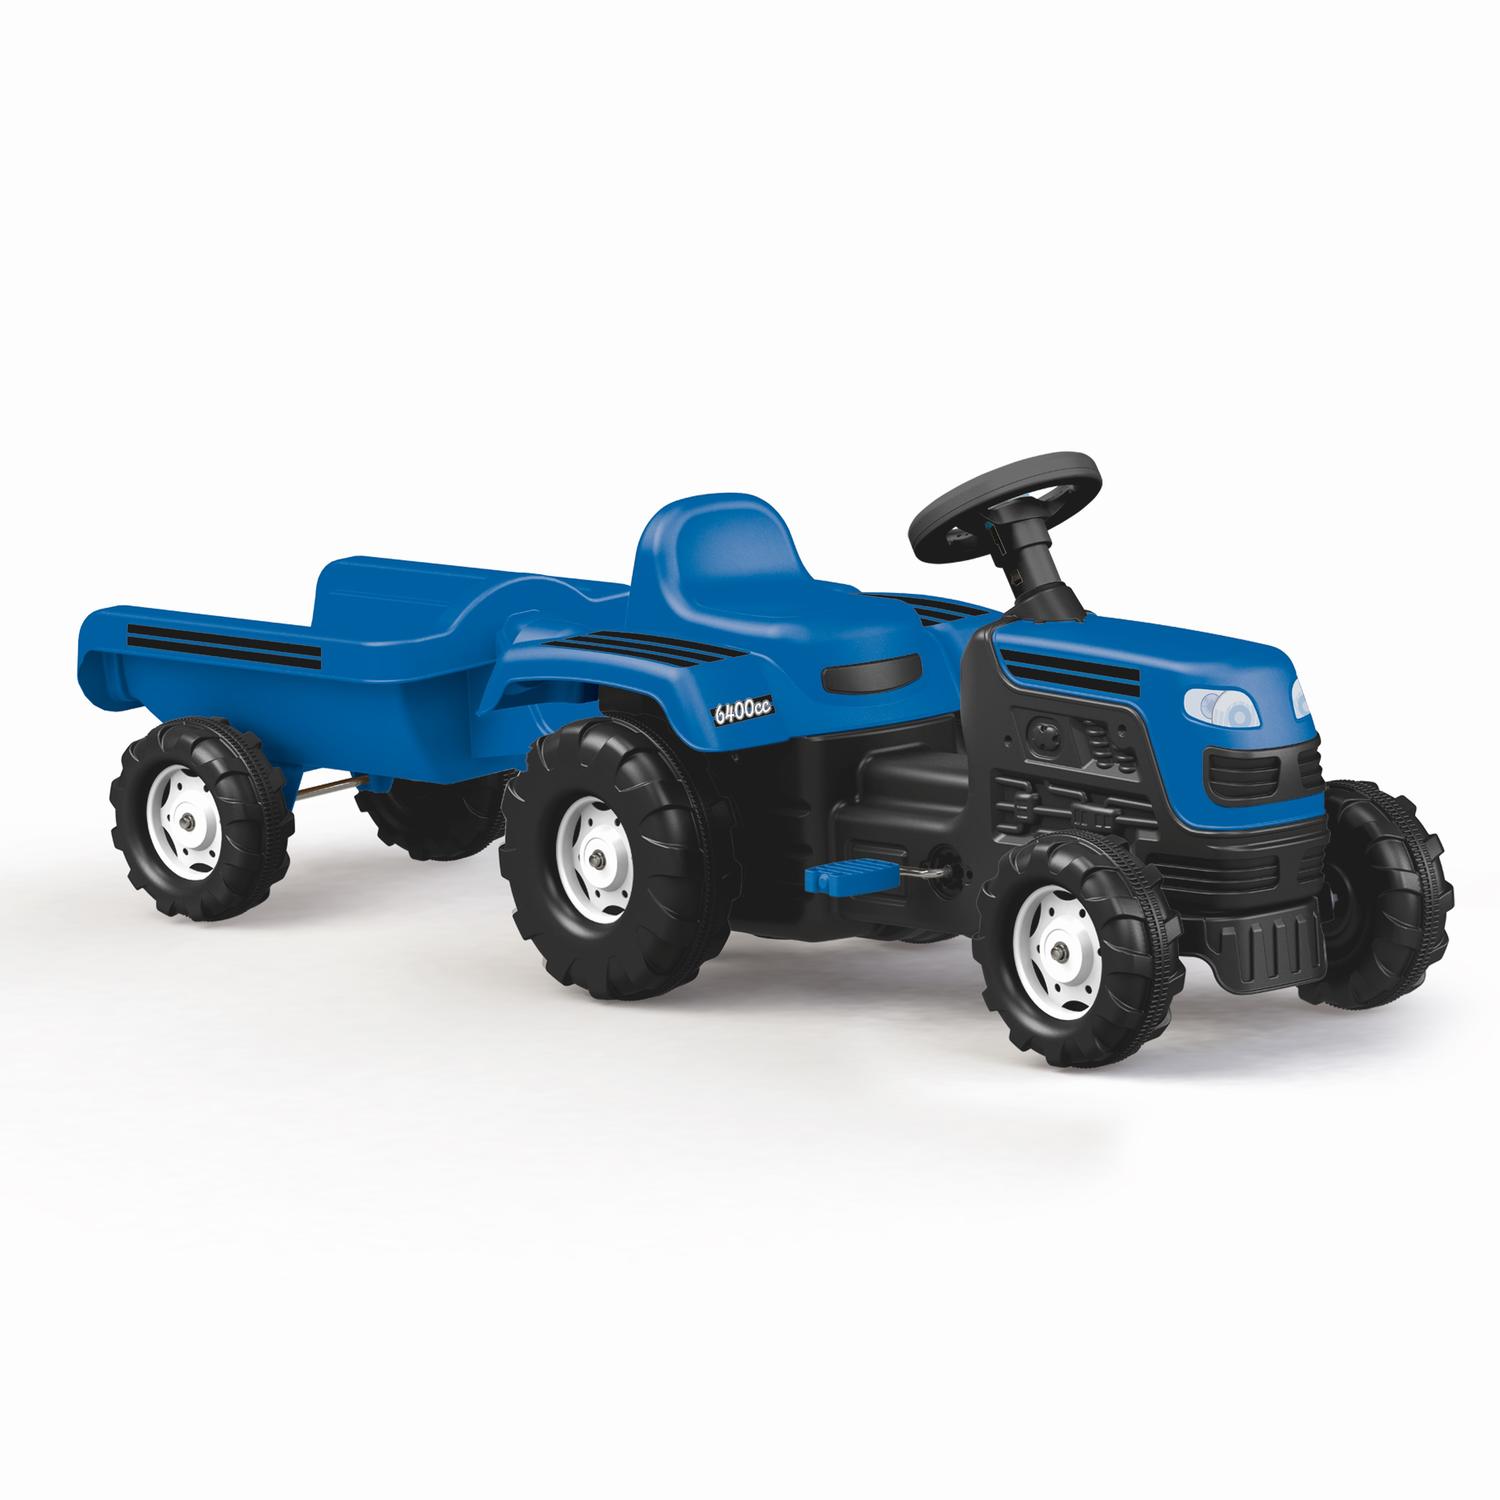 Tractor cu remorca - albastru image2